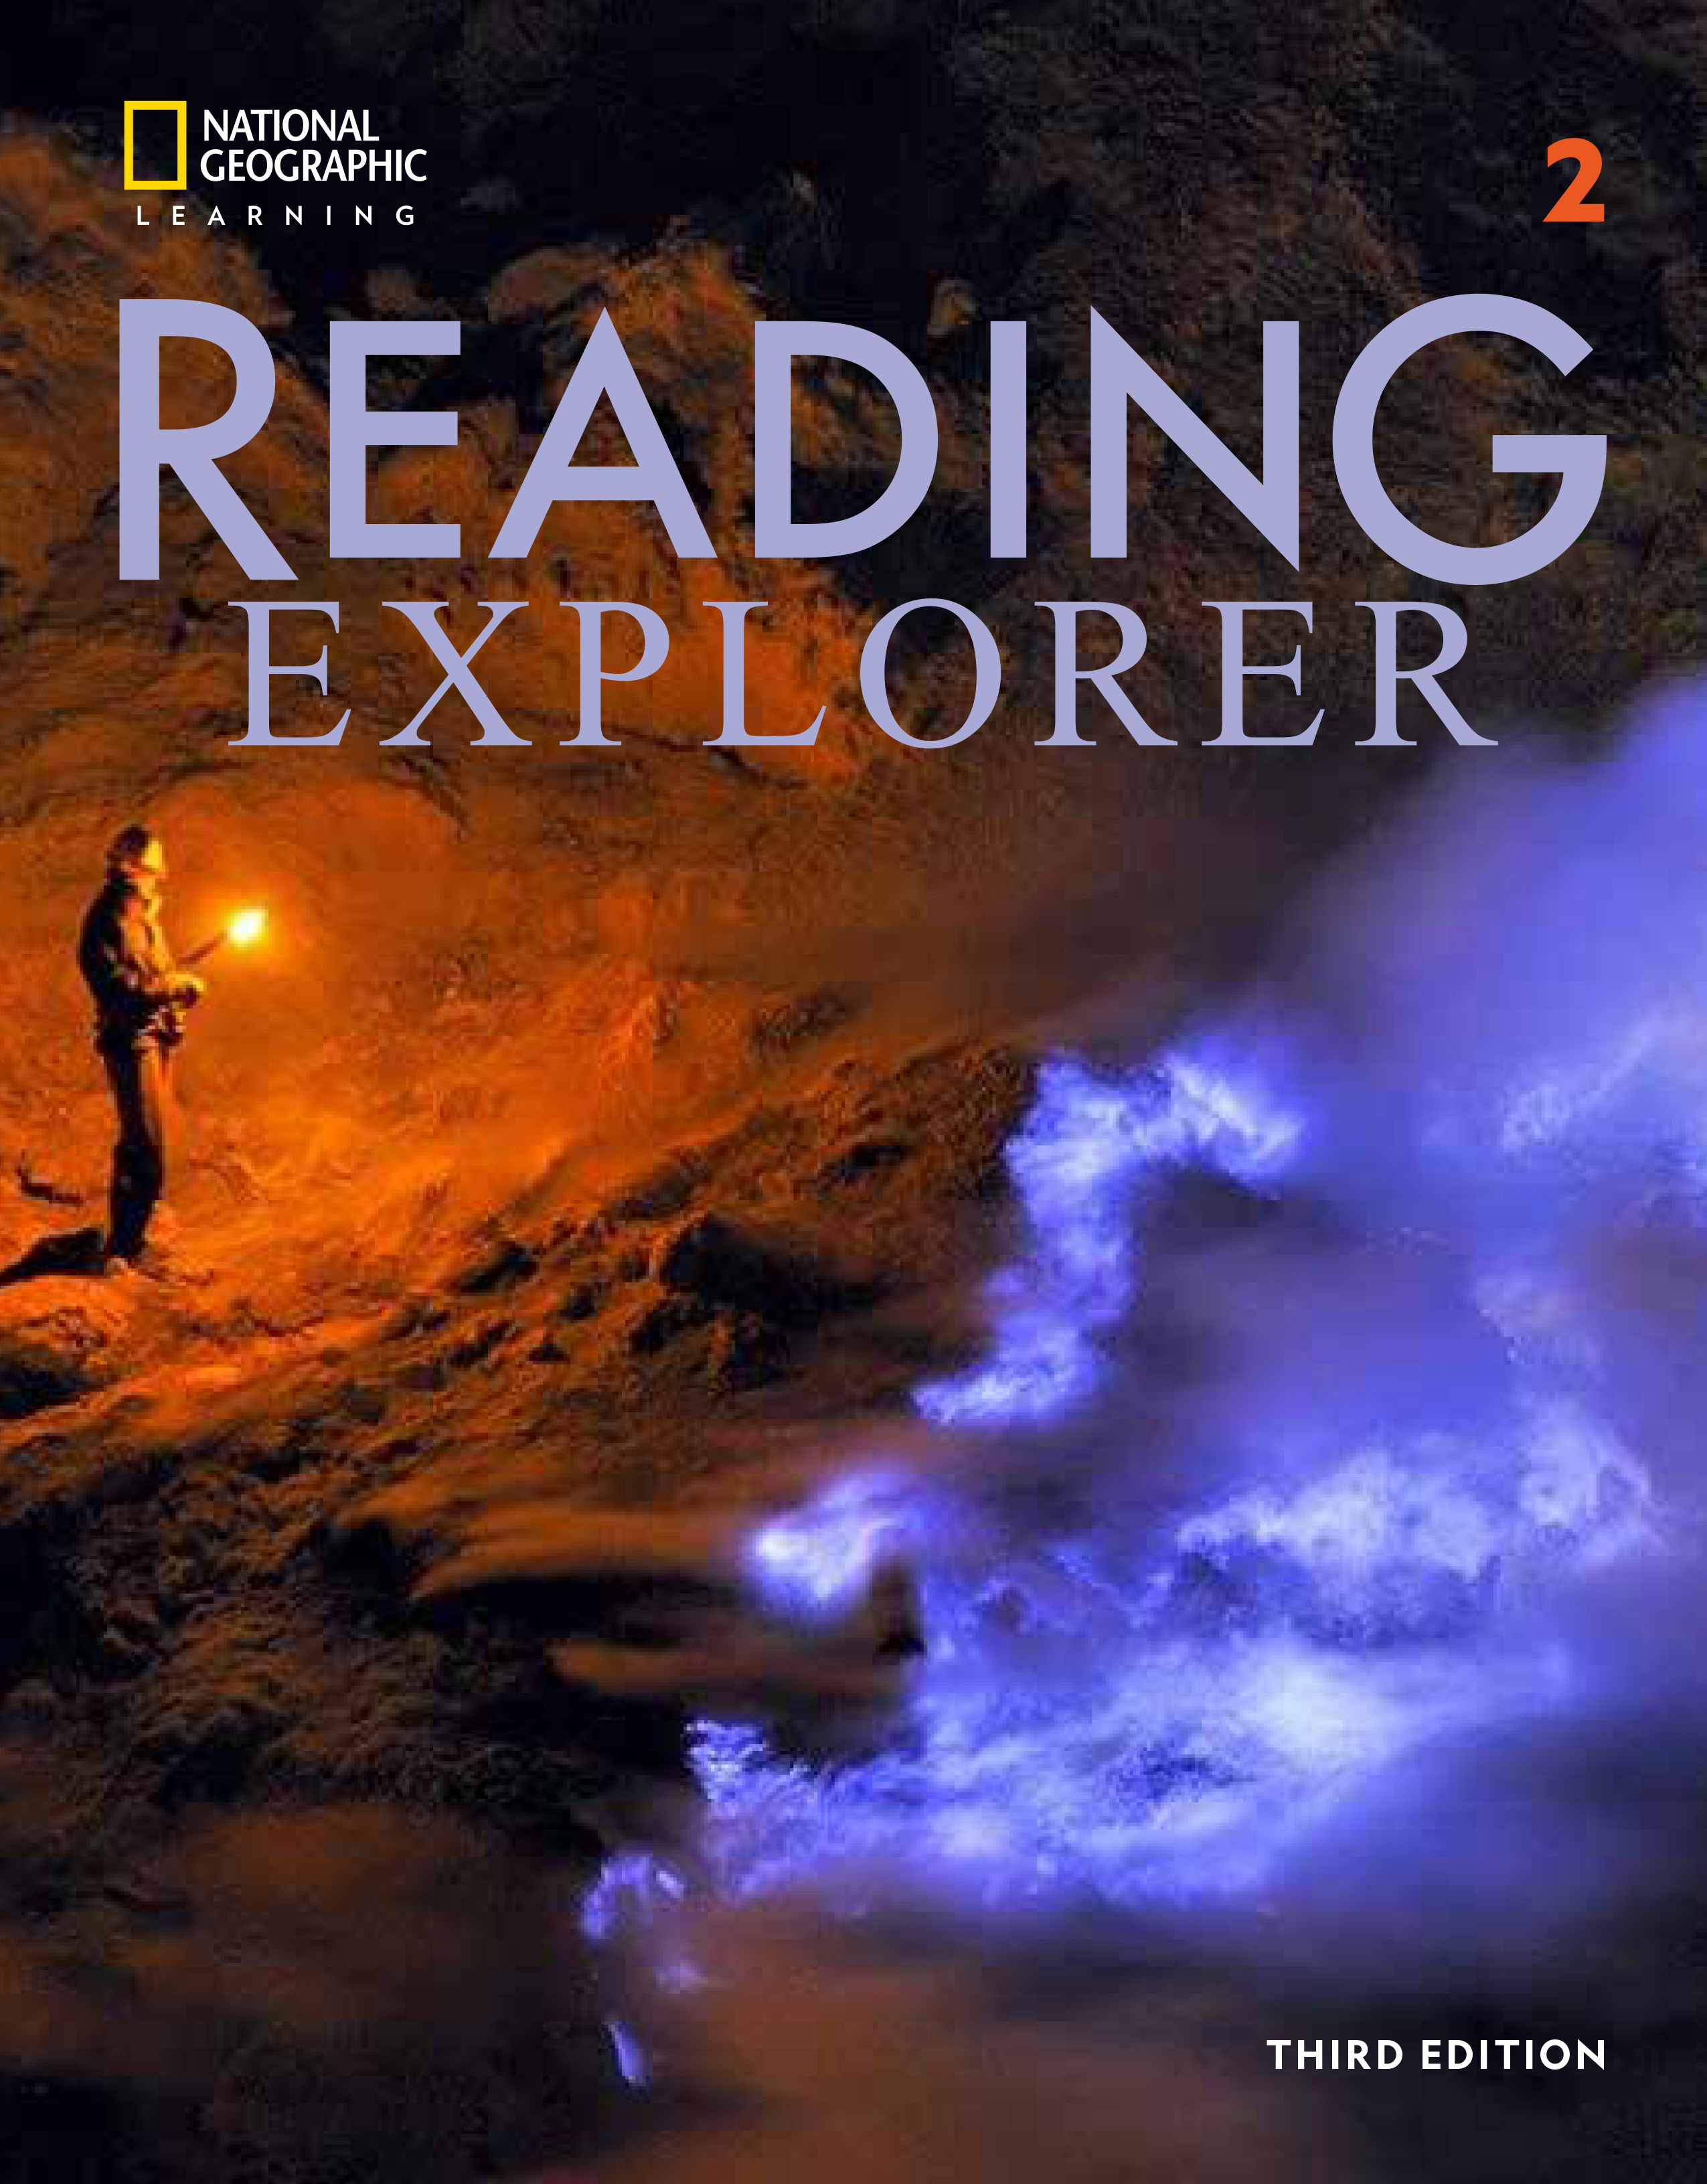 Reading explorer 3/E 2 DVD/AUDIO CD Package